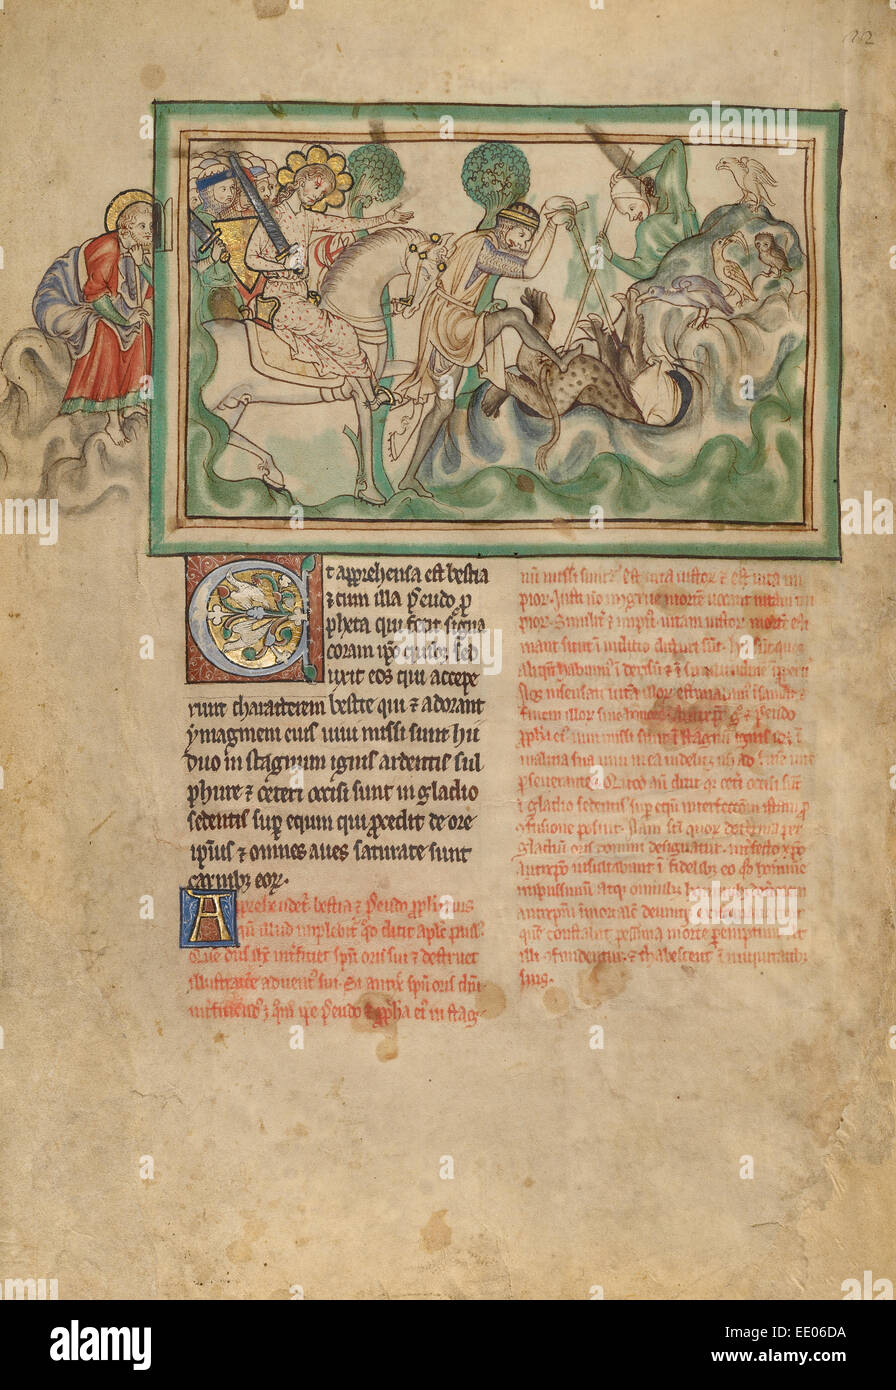 La sconfitta della bestia sconosciuta; Londra (probabilmente), l'Inghilterra, l'Europa; circa 1255 - 1260; tempere, foglia oro Foto Stock